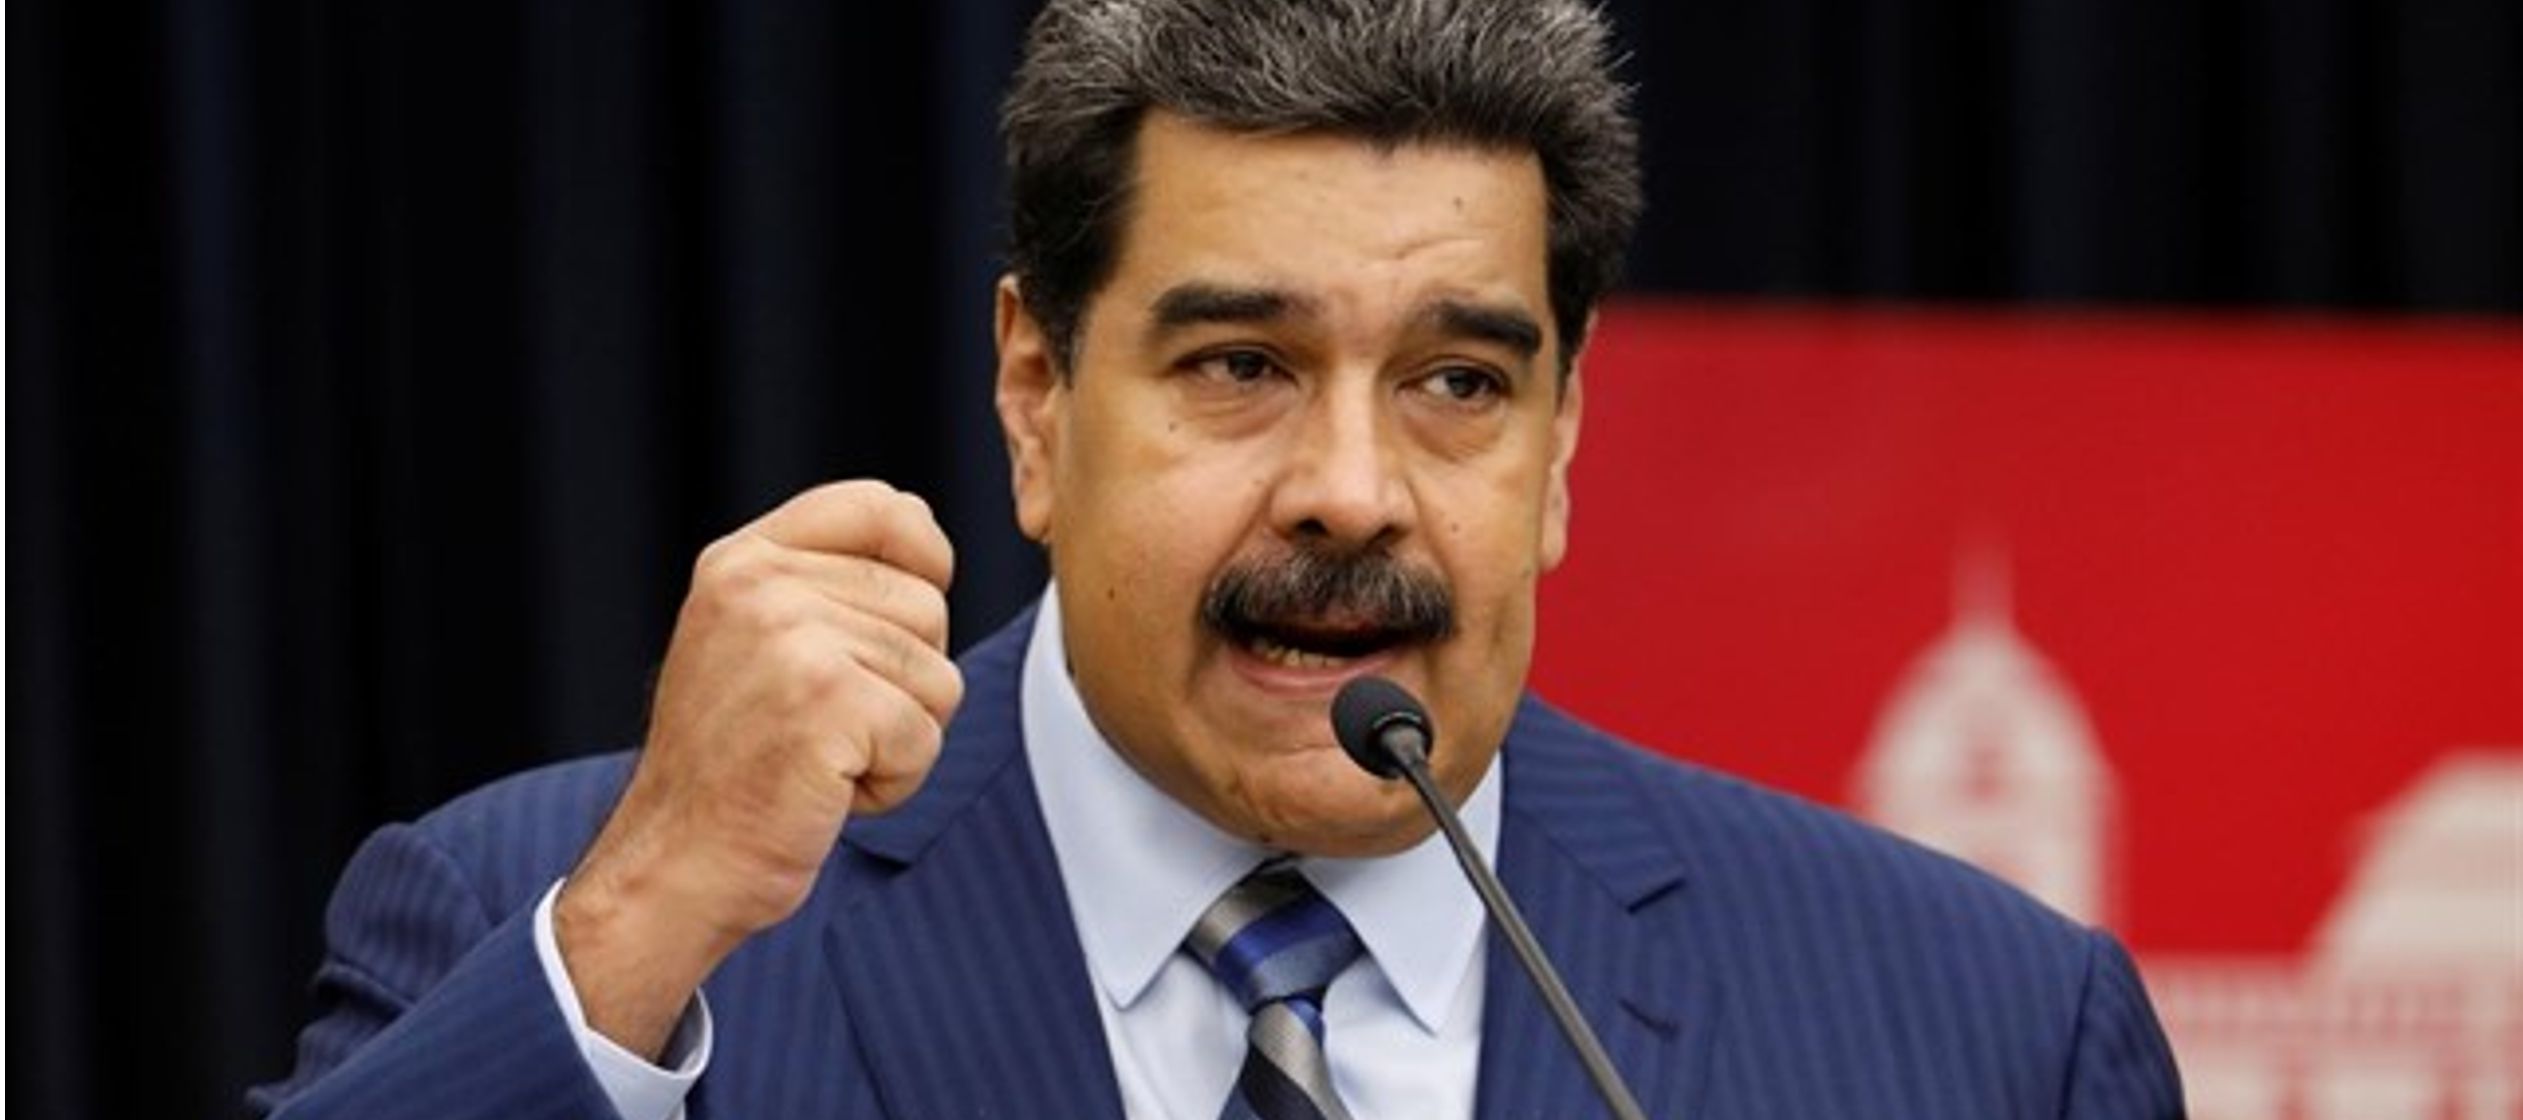 El mandatario venezolano ha aprovechado para recordar el intento de magnicidio que sufrió...